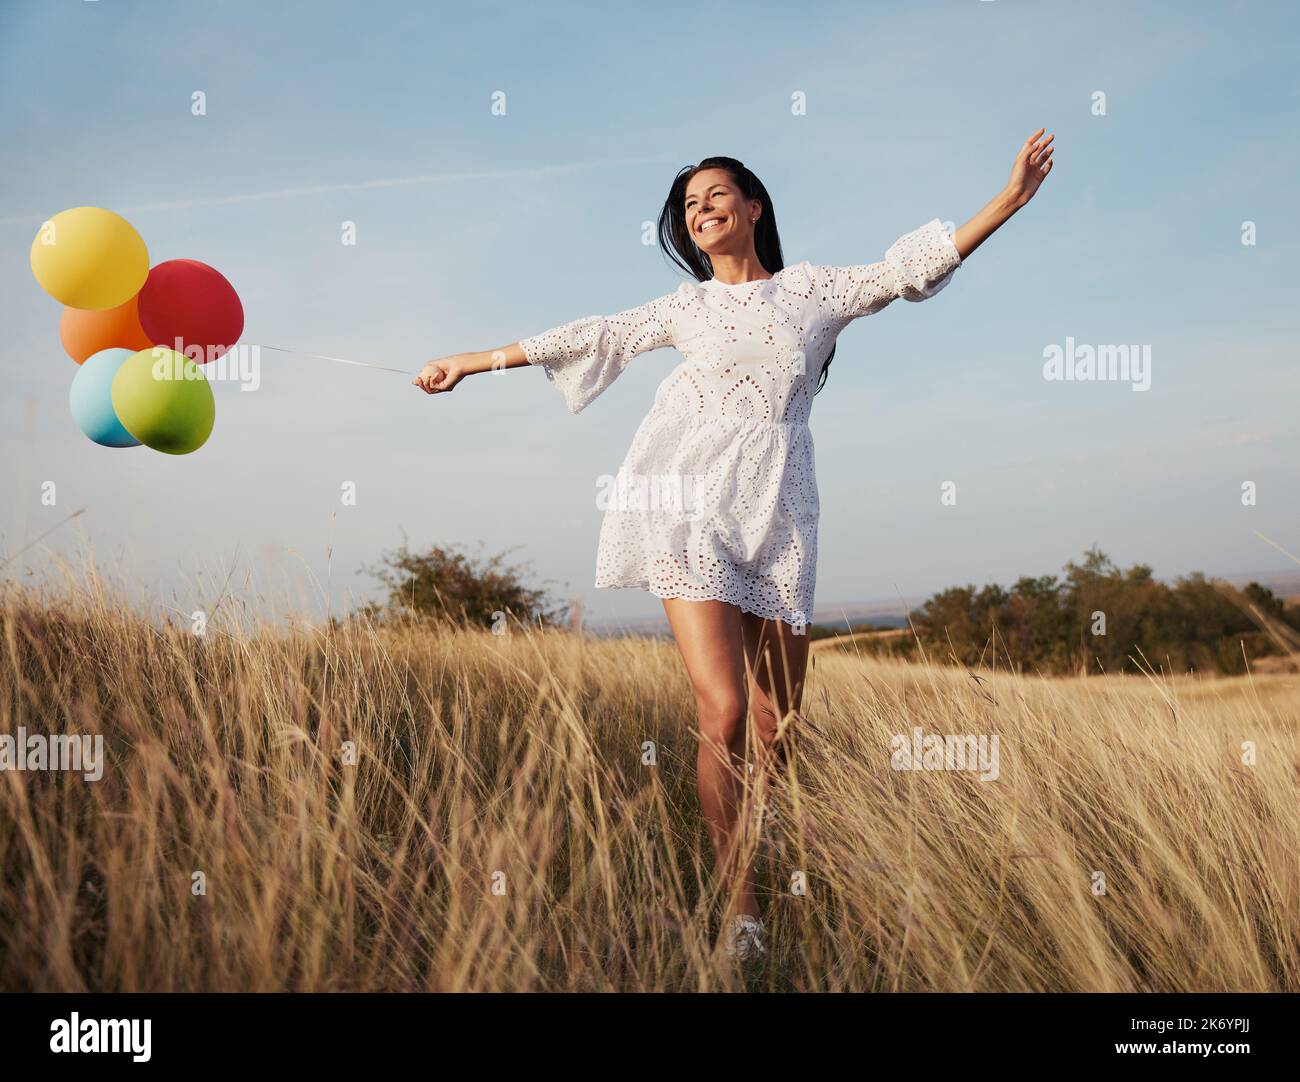 donna balloon ragazza all'aperto divertimento felice lifestyle corsa felicità natura estate vitalità sano spensierato Foto Stock